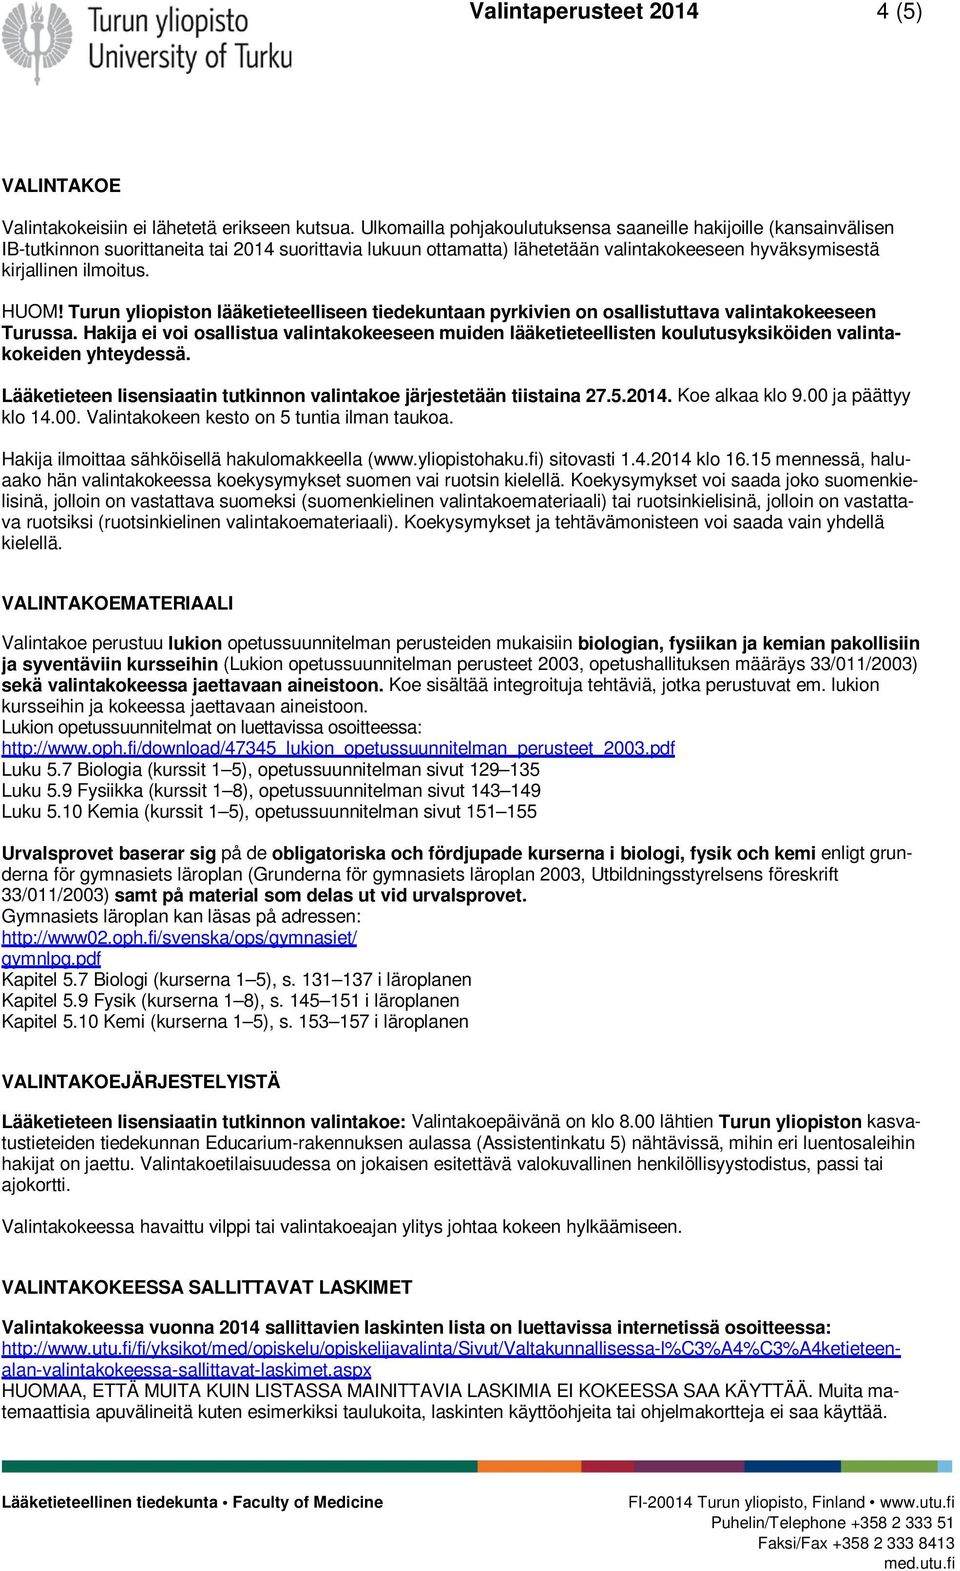 HUOM! Turun yliopiston lääketieteelliseen tiedekuntaan pyrkivien on osallistuttava valintakokeeseen Turussa.